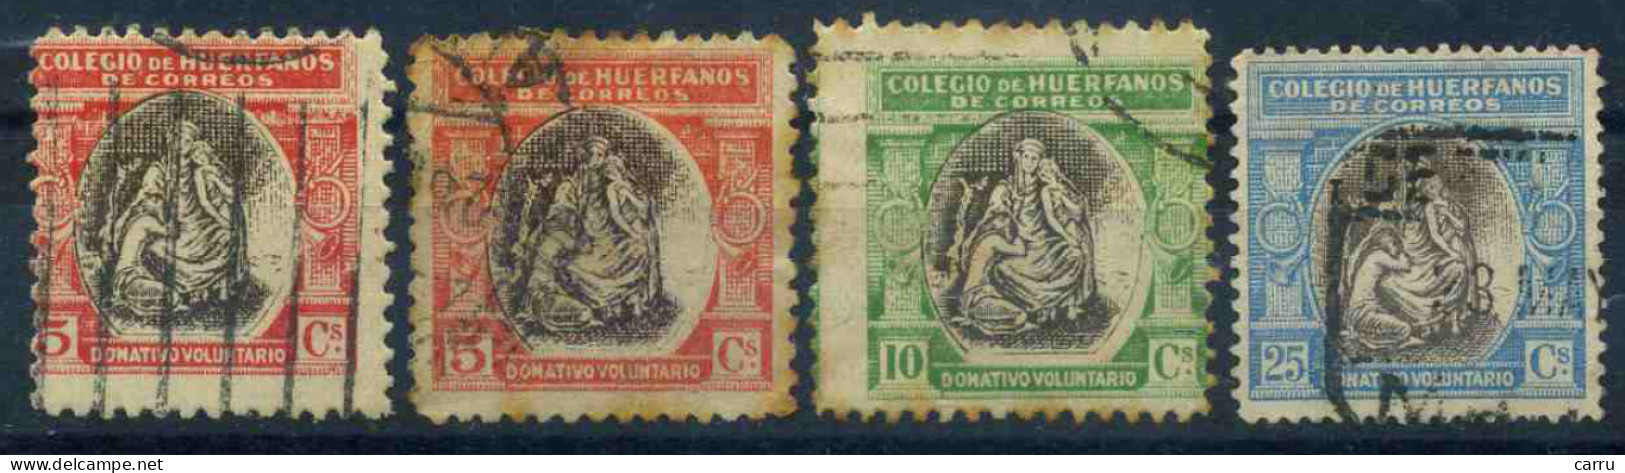 España - Beneficencia 1926 - Wohlfahrtsmarken